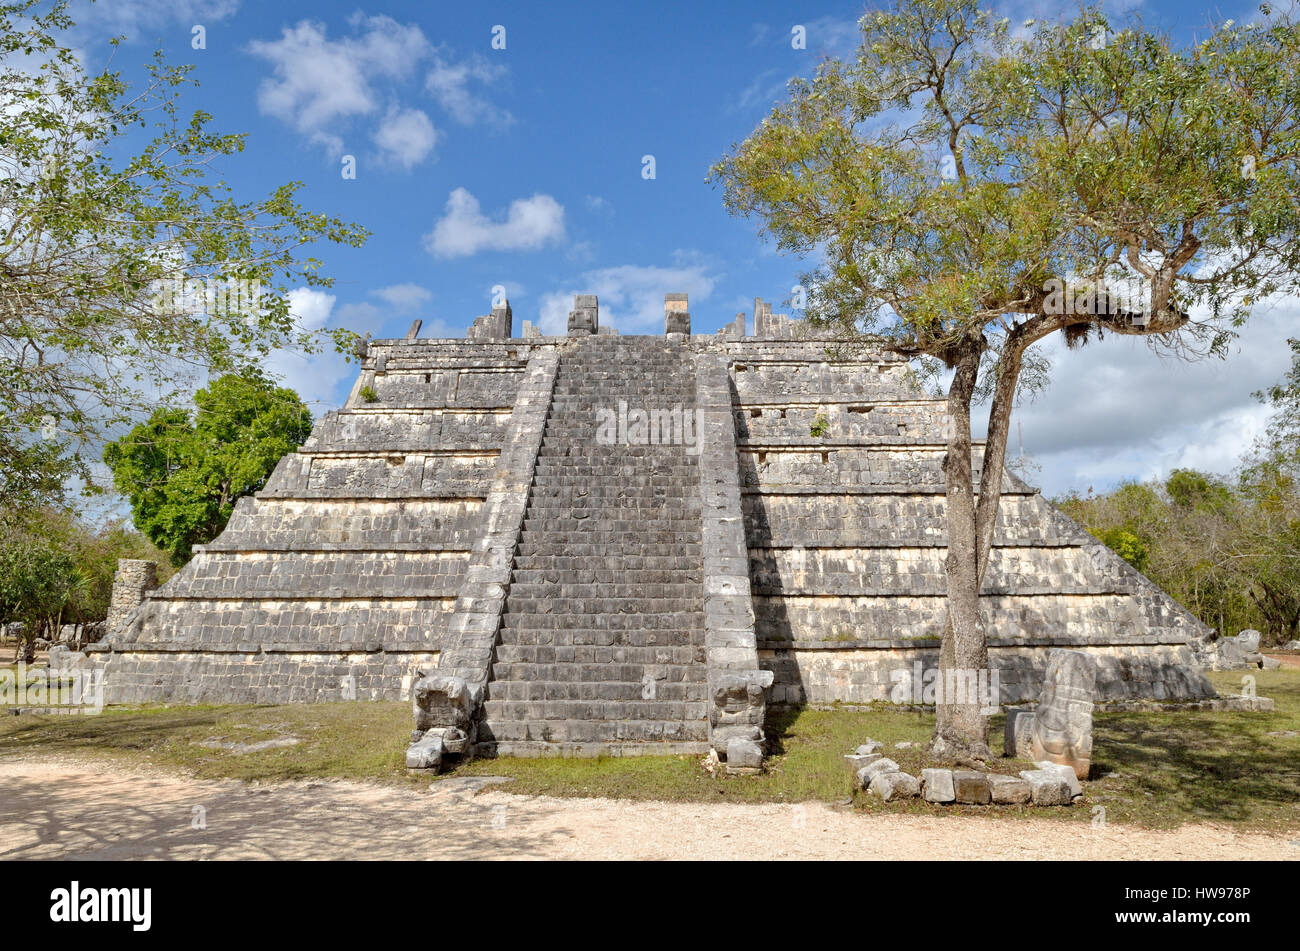 El Osario o Tumba del Gran Sacerdote, grave of the high priest, historic Mayan city of Chichen Itza, Piste, Yucatan, Mexico Stock Photo